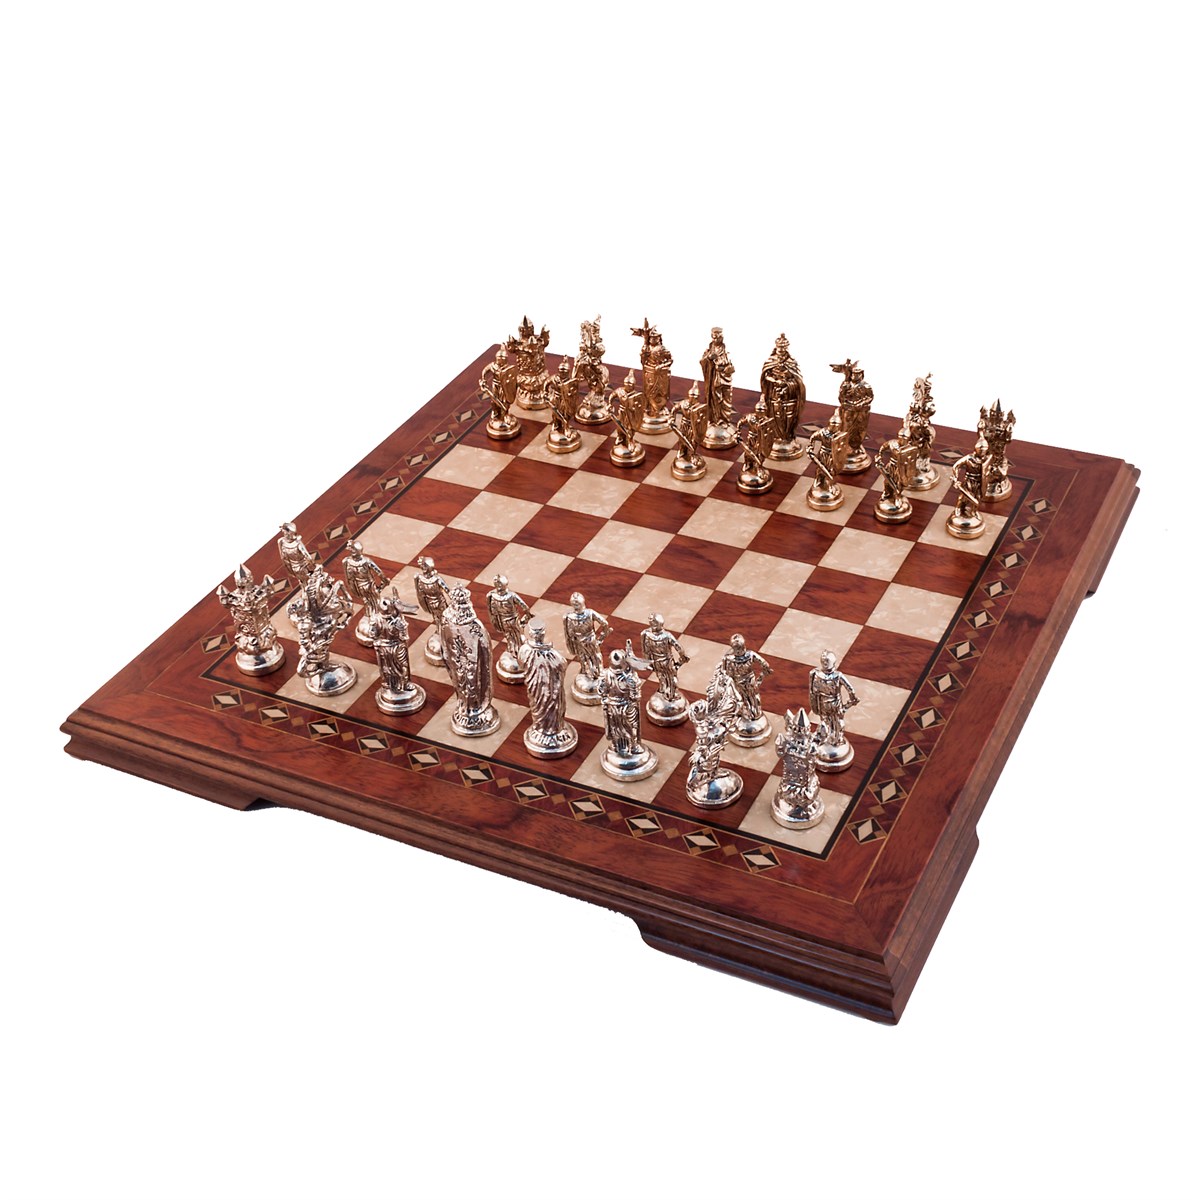 Helena Wood Art Handgemaakte houten schaakbord - Metalen Schaakstukken - Luxe uitgave - Schaakspel - Schaakset - Schaken - Chess - 49,5 x 49,5 cm